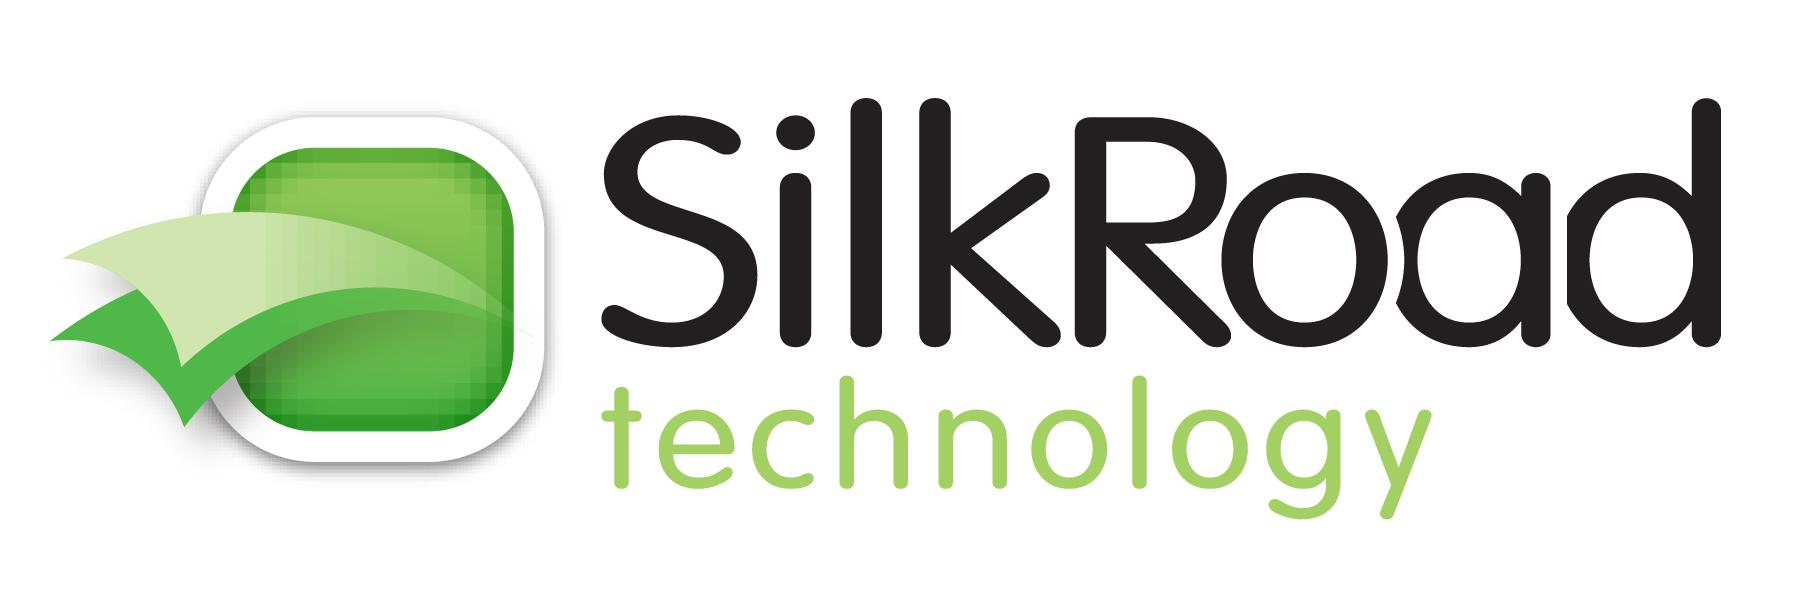 Silkroad Logo - Index of /wp-content/uploads/2011/06